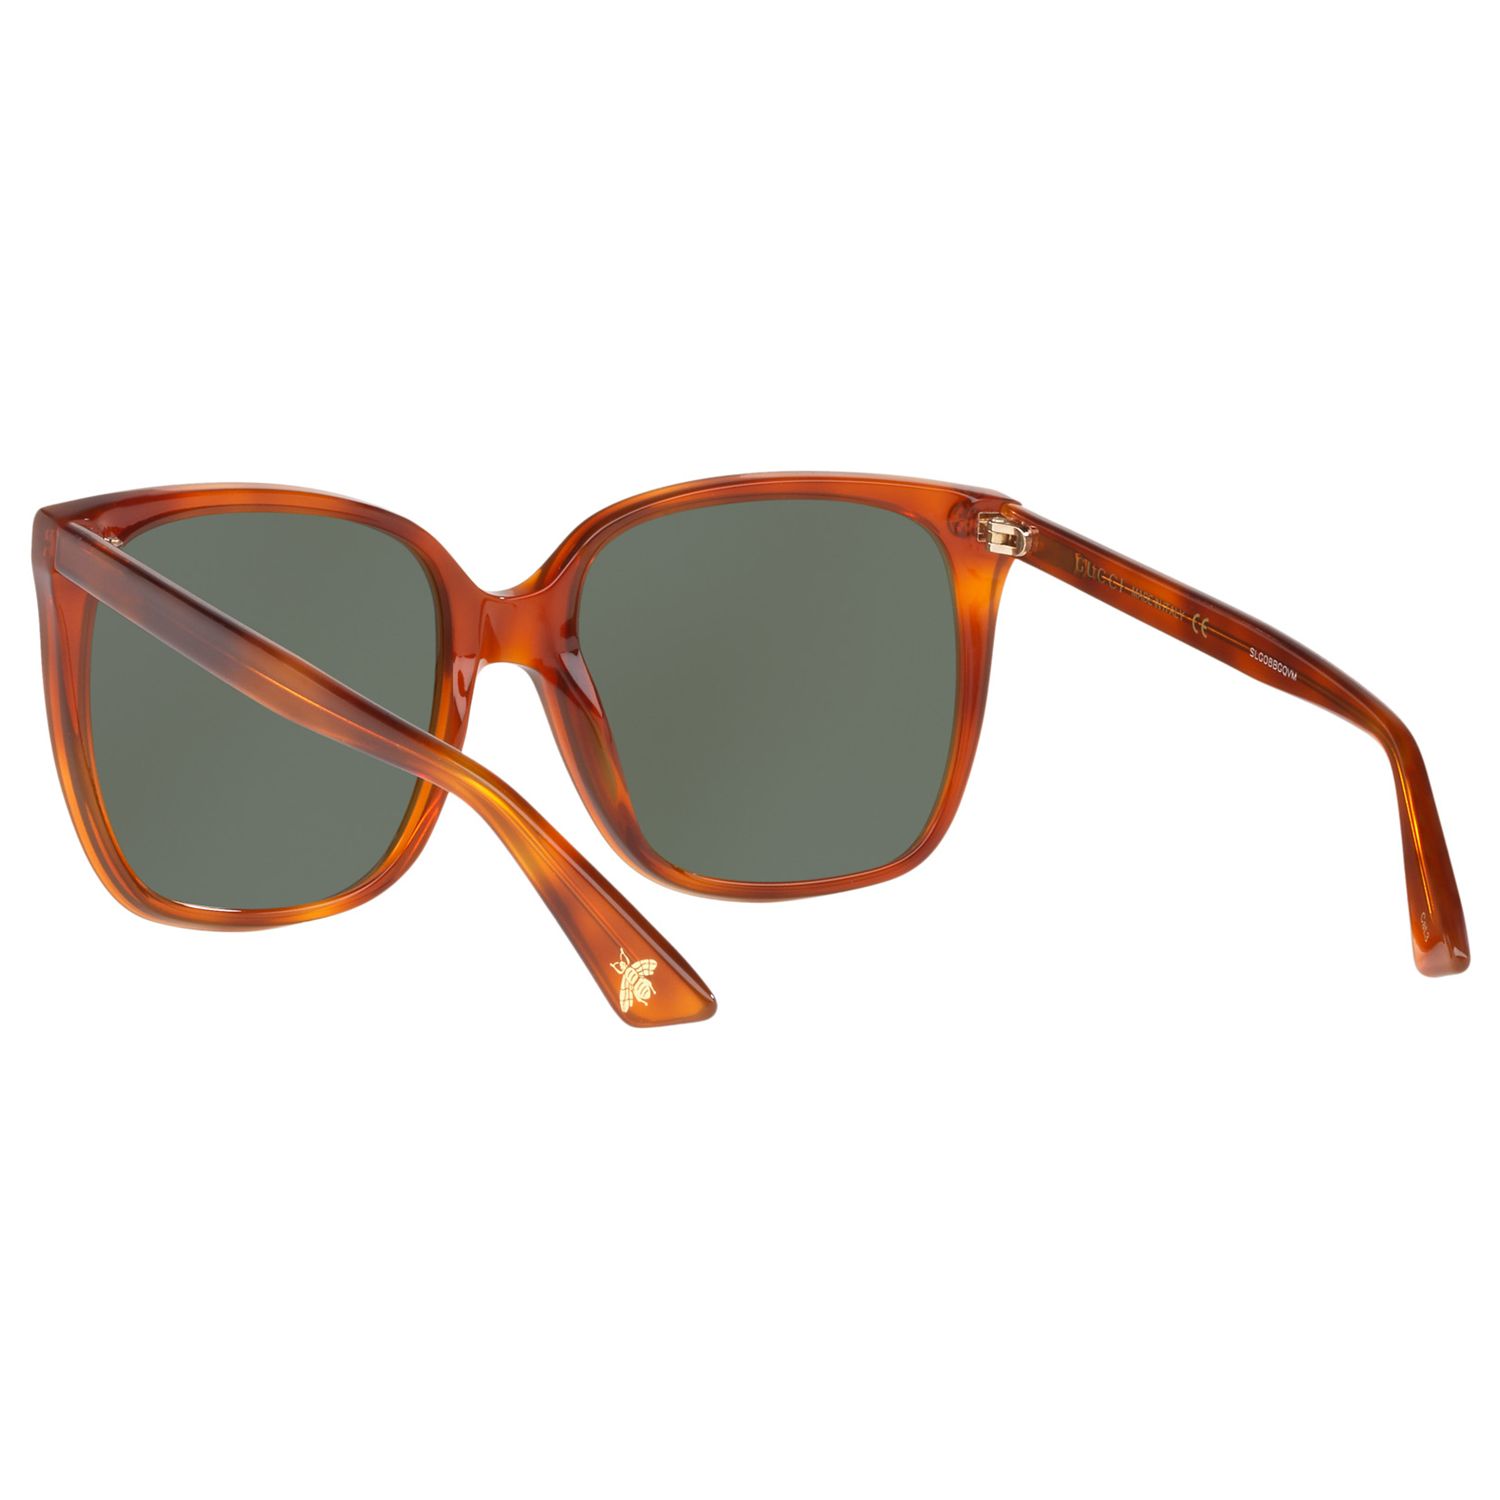 Gucci GG0022S Square Sunglasses, Tortoise/Dark Green